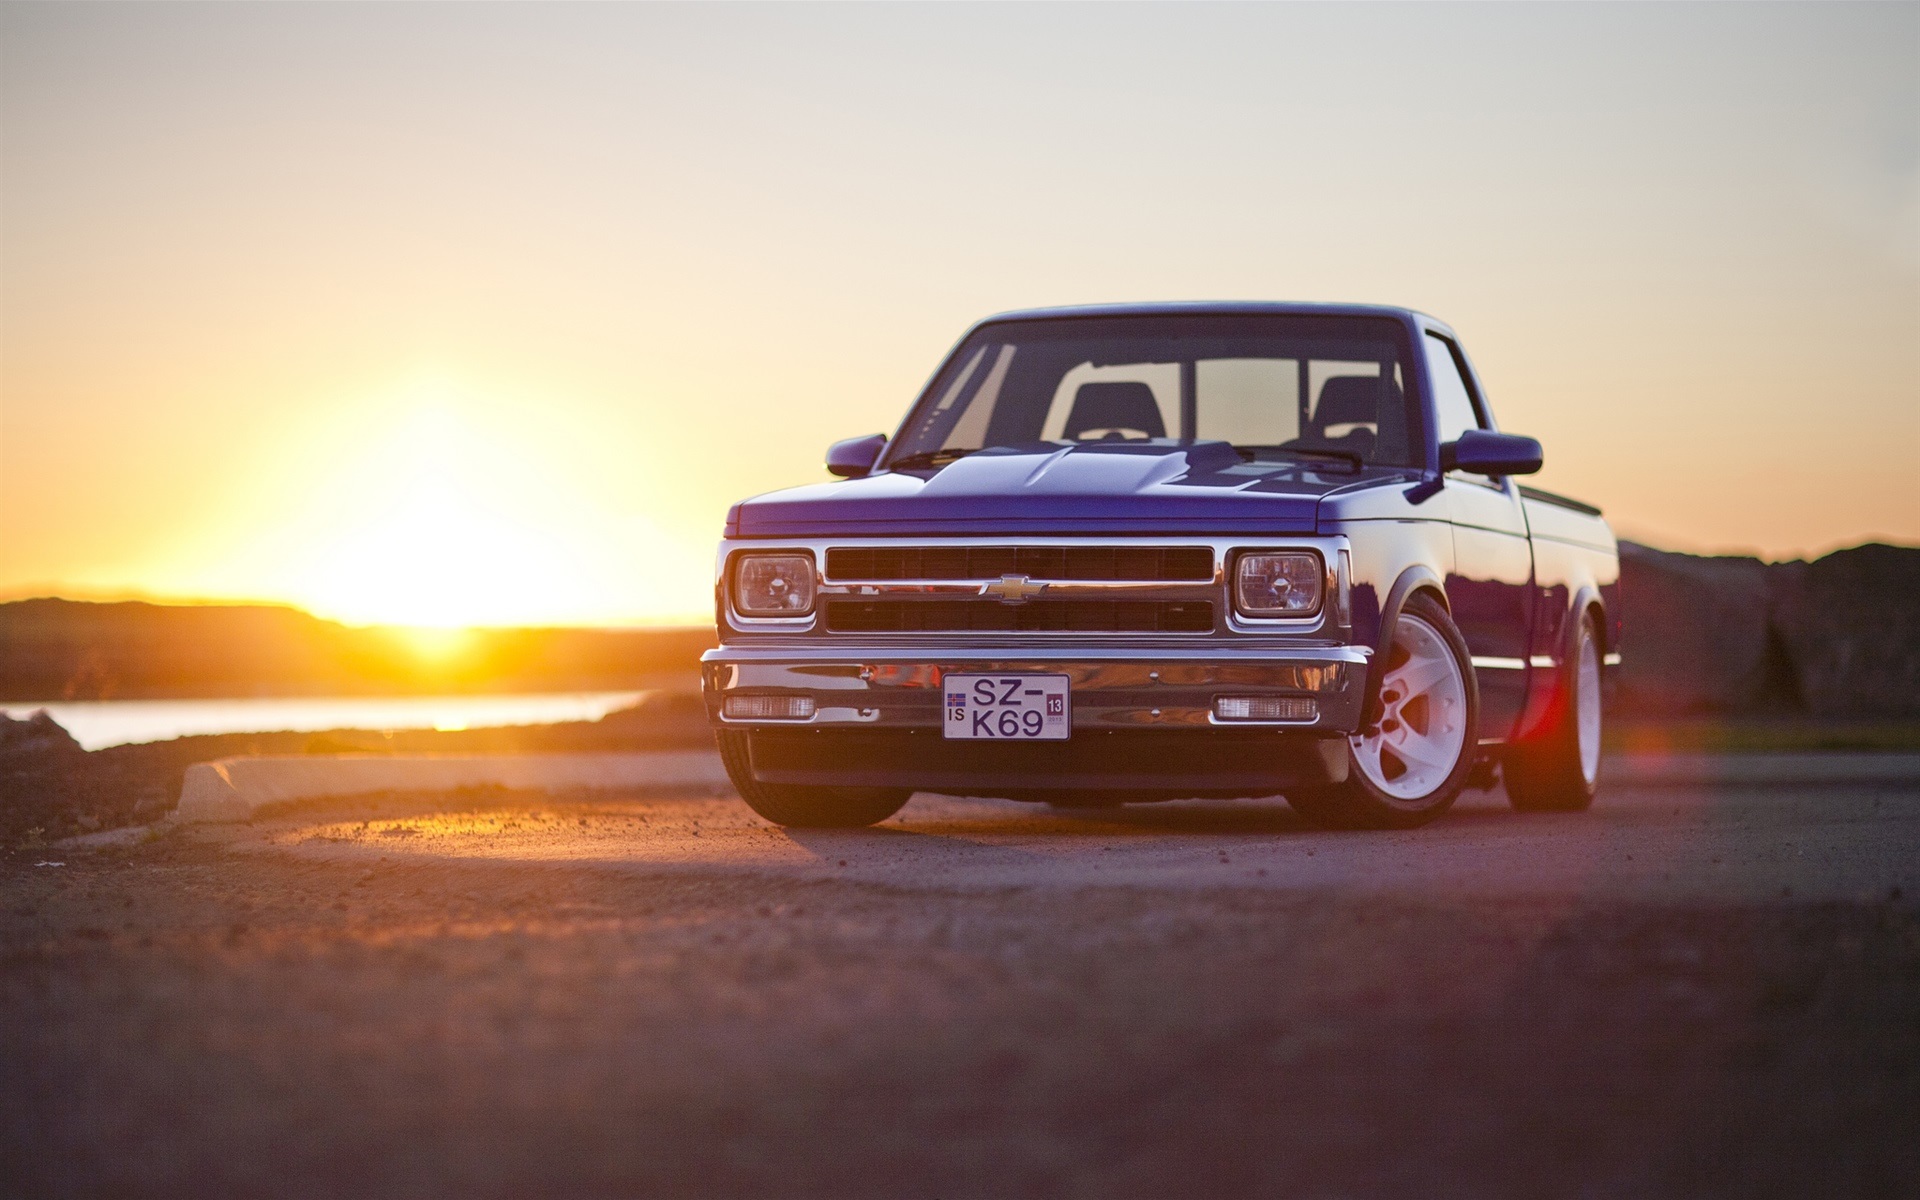 Chevrolet S10 Pickup Sunset Wallpaper Cars Wallpaper Better